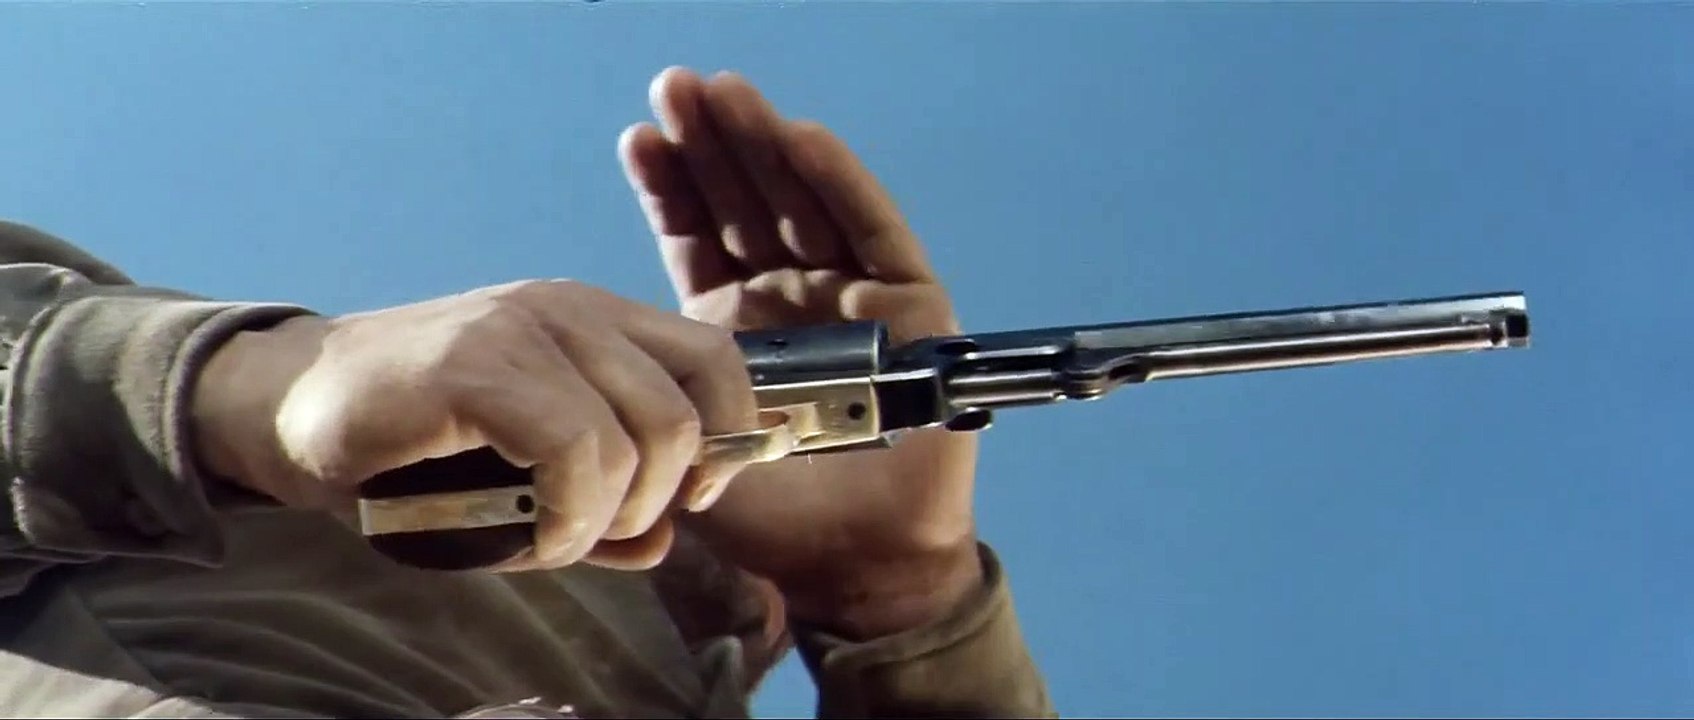 Gott vergibt - Django nie! | movie | 1967 | Official Trailer